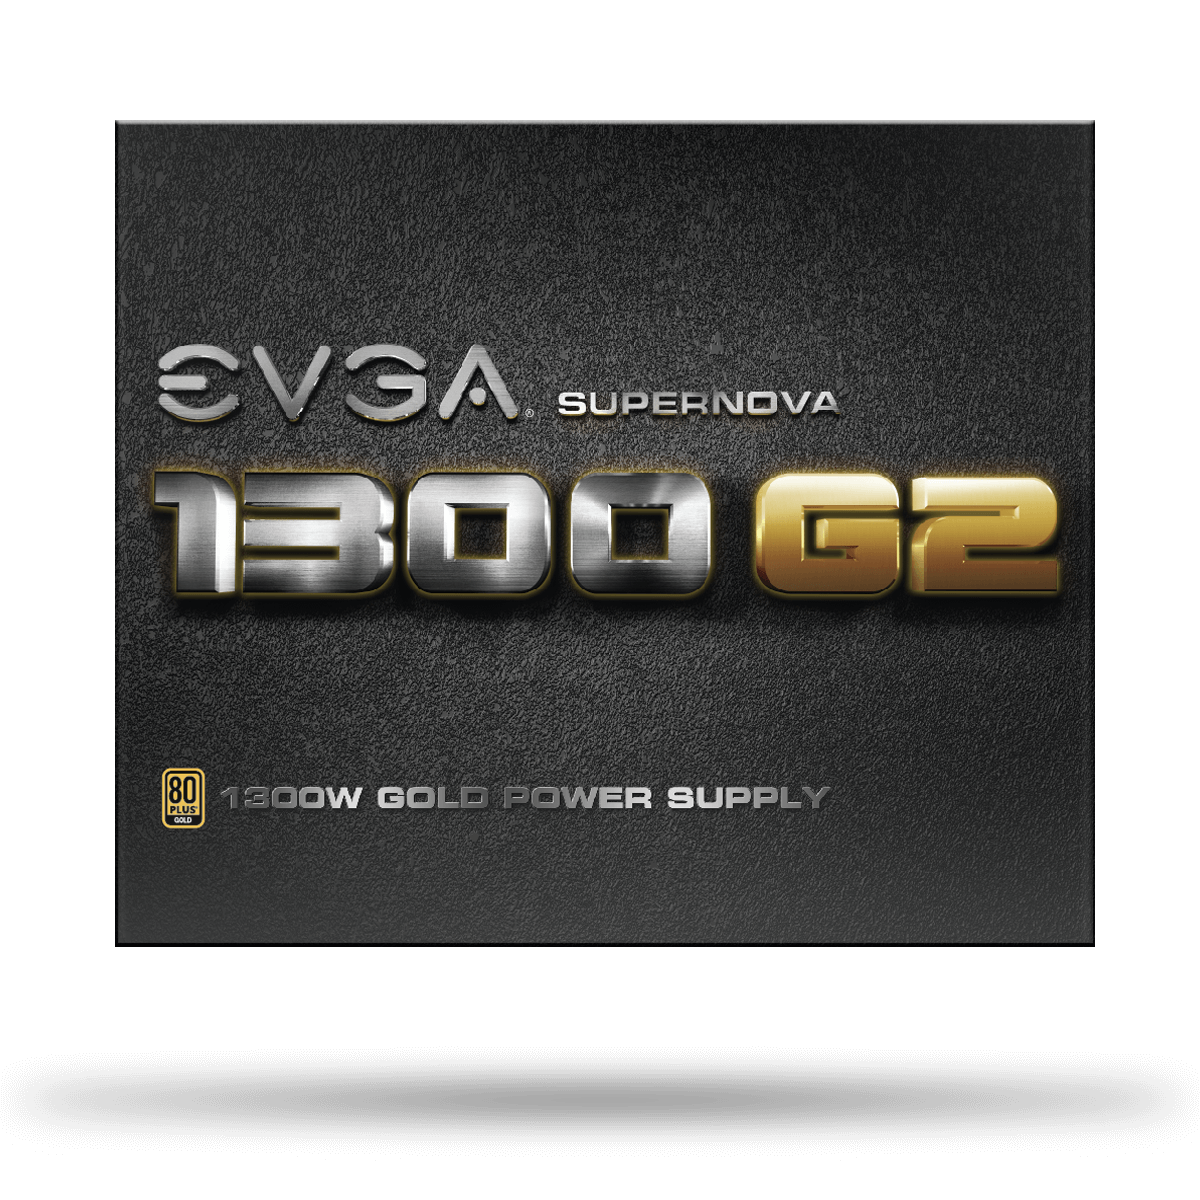 EVGA Supernova 1300 G2 120-G2-1300-XR 1300W 80 Plus Gold ATX12V & EPS12V Power Supply 